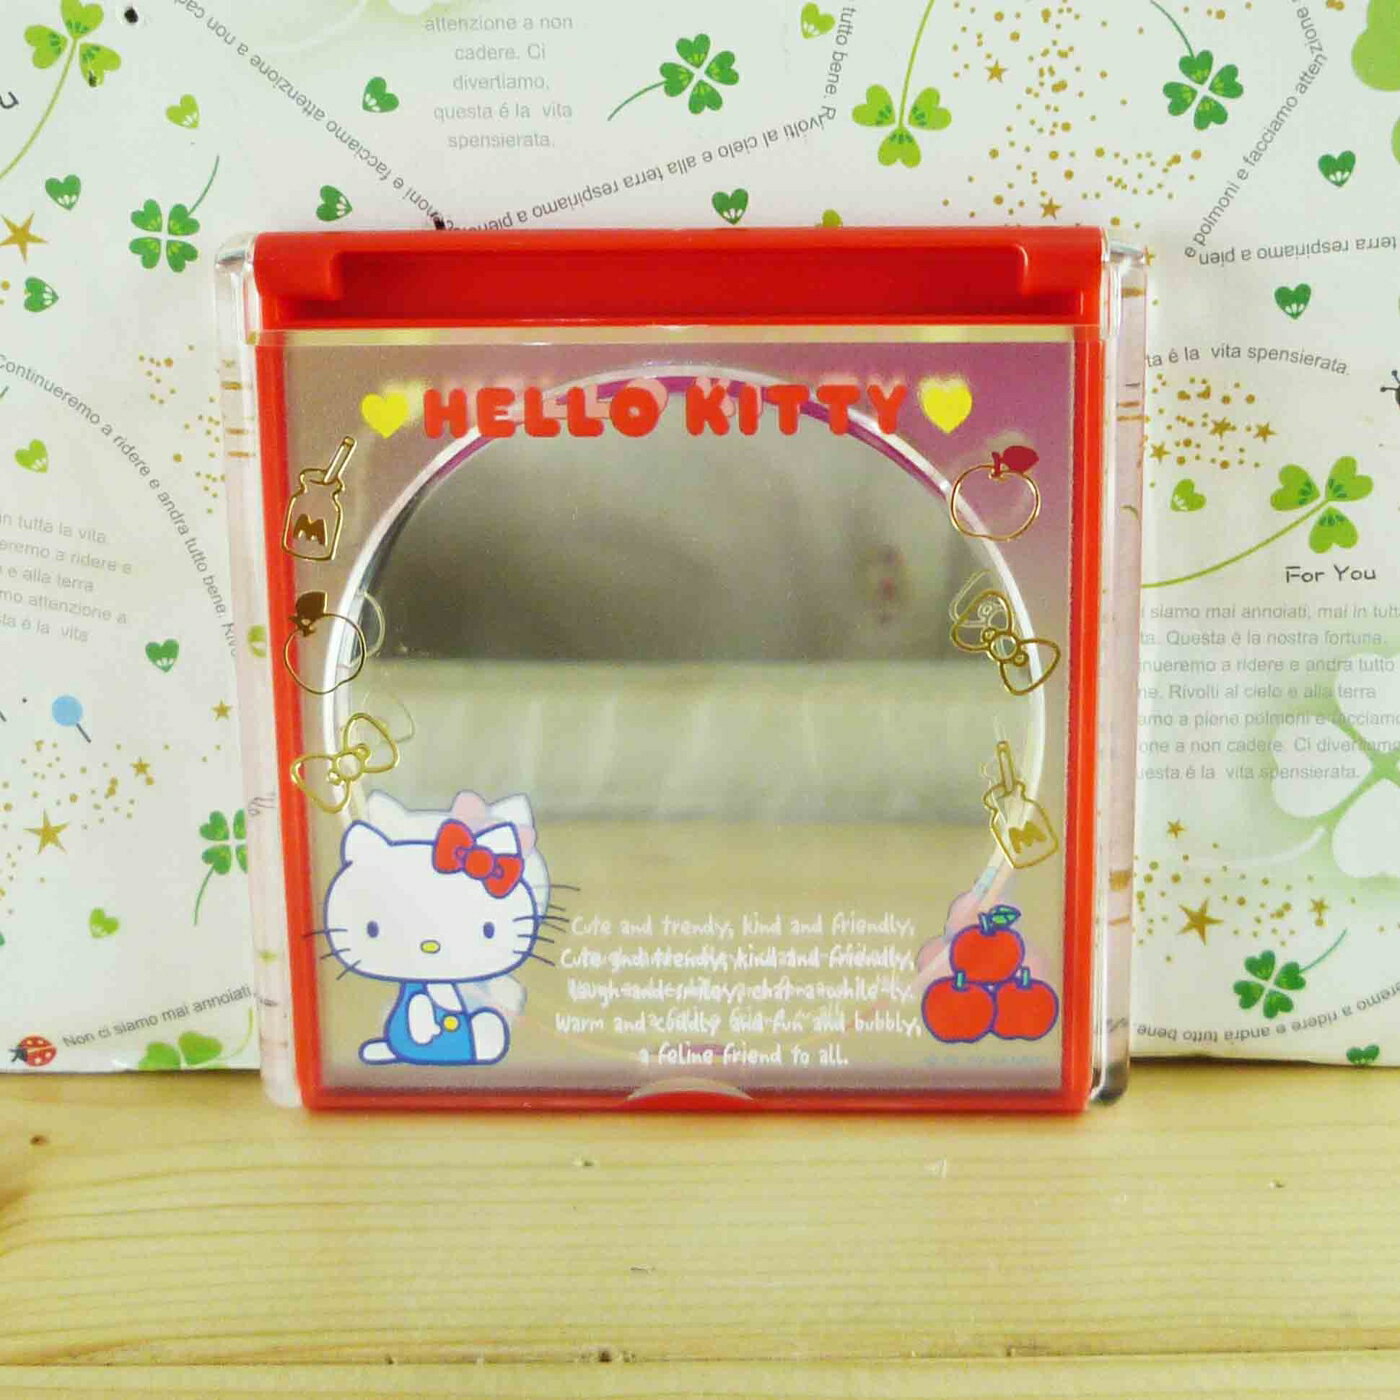 【震撼精品百貨】Hello Kitty 凱蒂貓-摺疊鏡-紅蘋果 震撼日式精品百貨